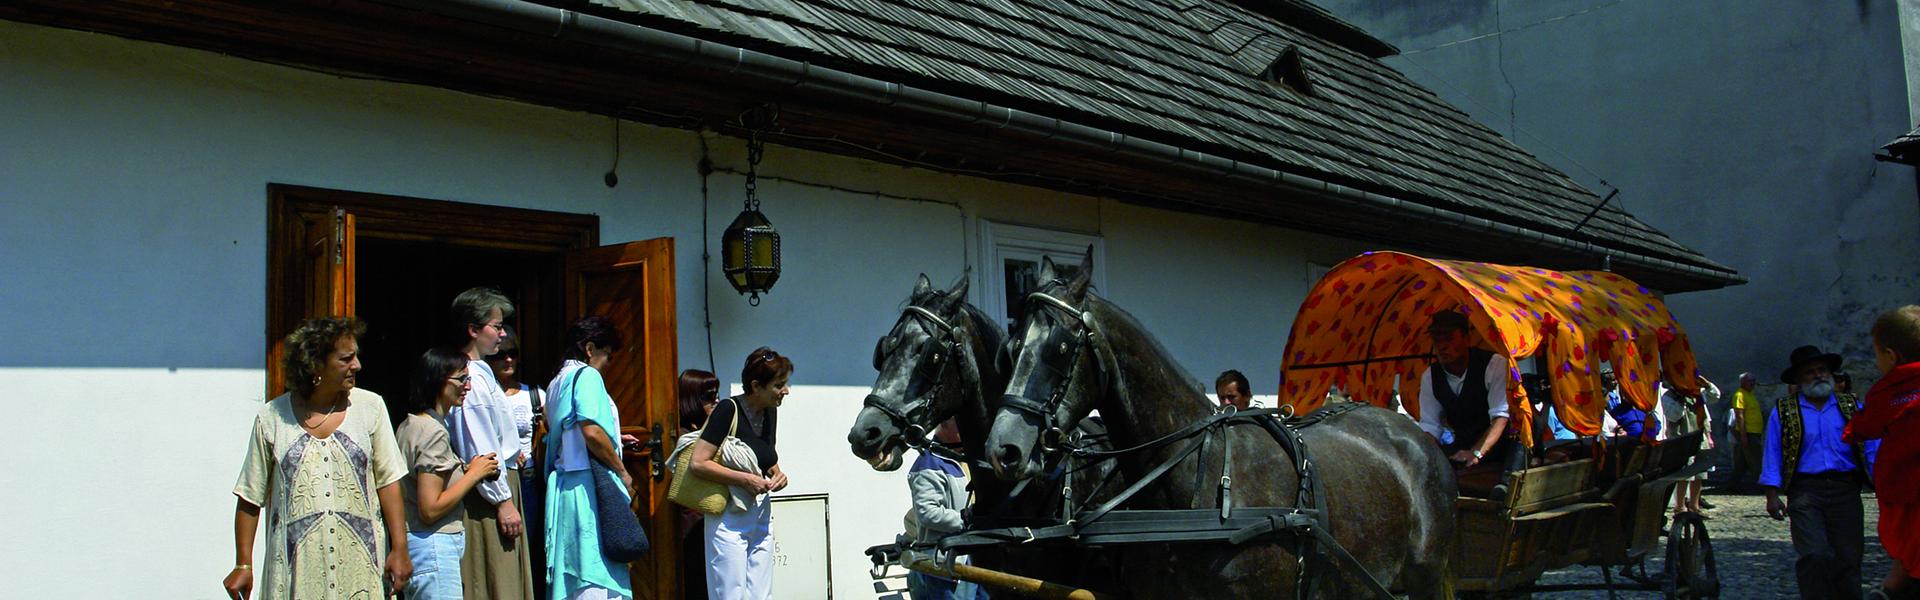 Cygański wóz zaprzęgnięty w konie